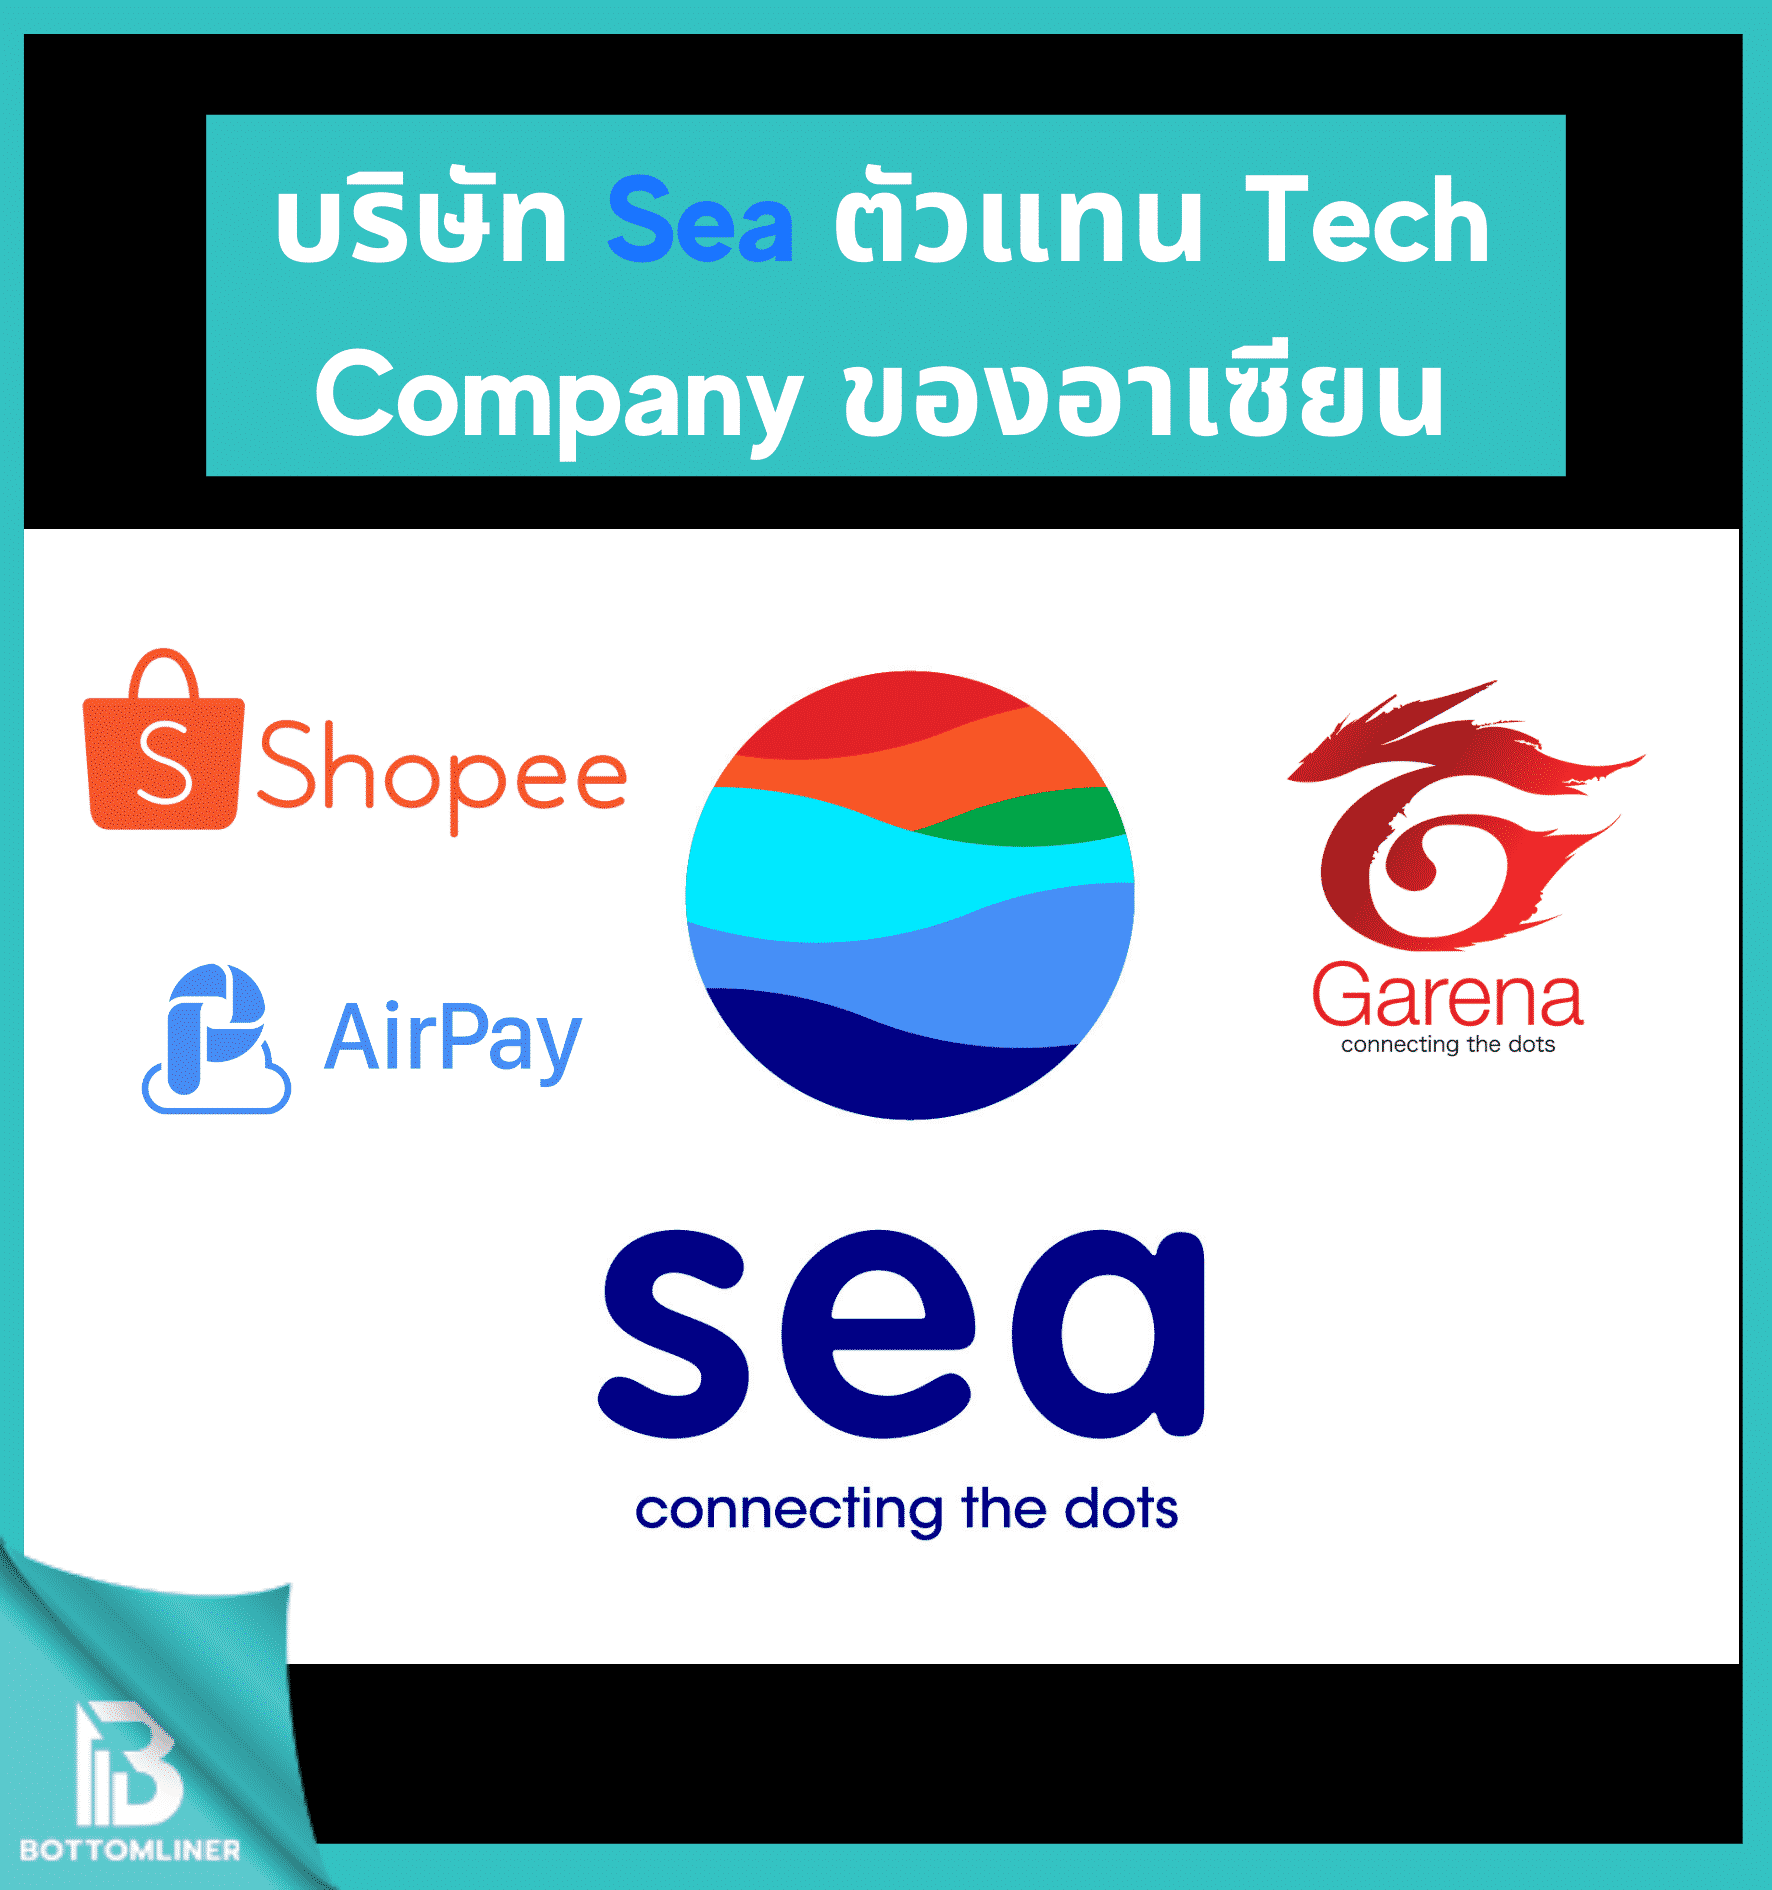 บริษัท Sea ตัวแทน Tech Company ของอาเซียน